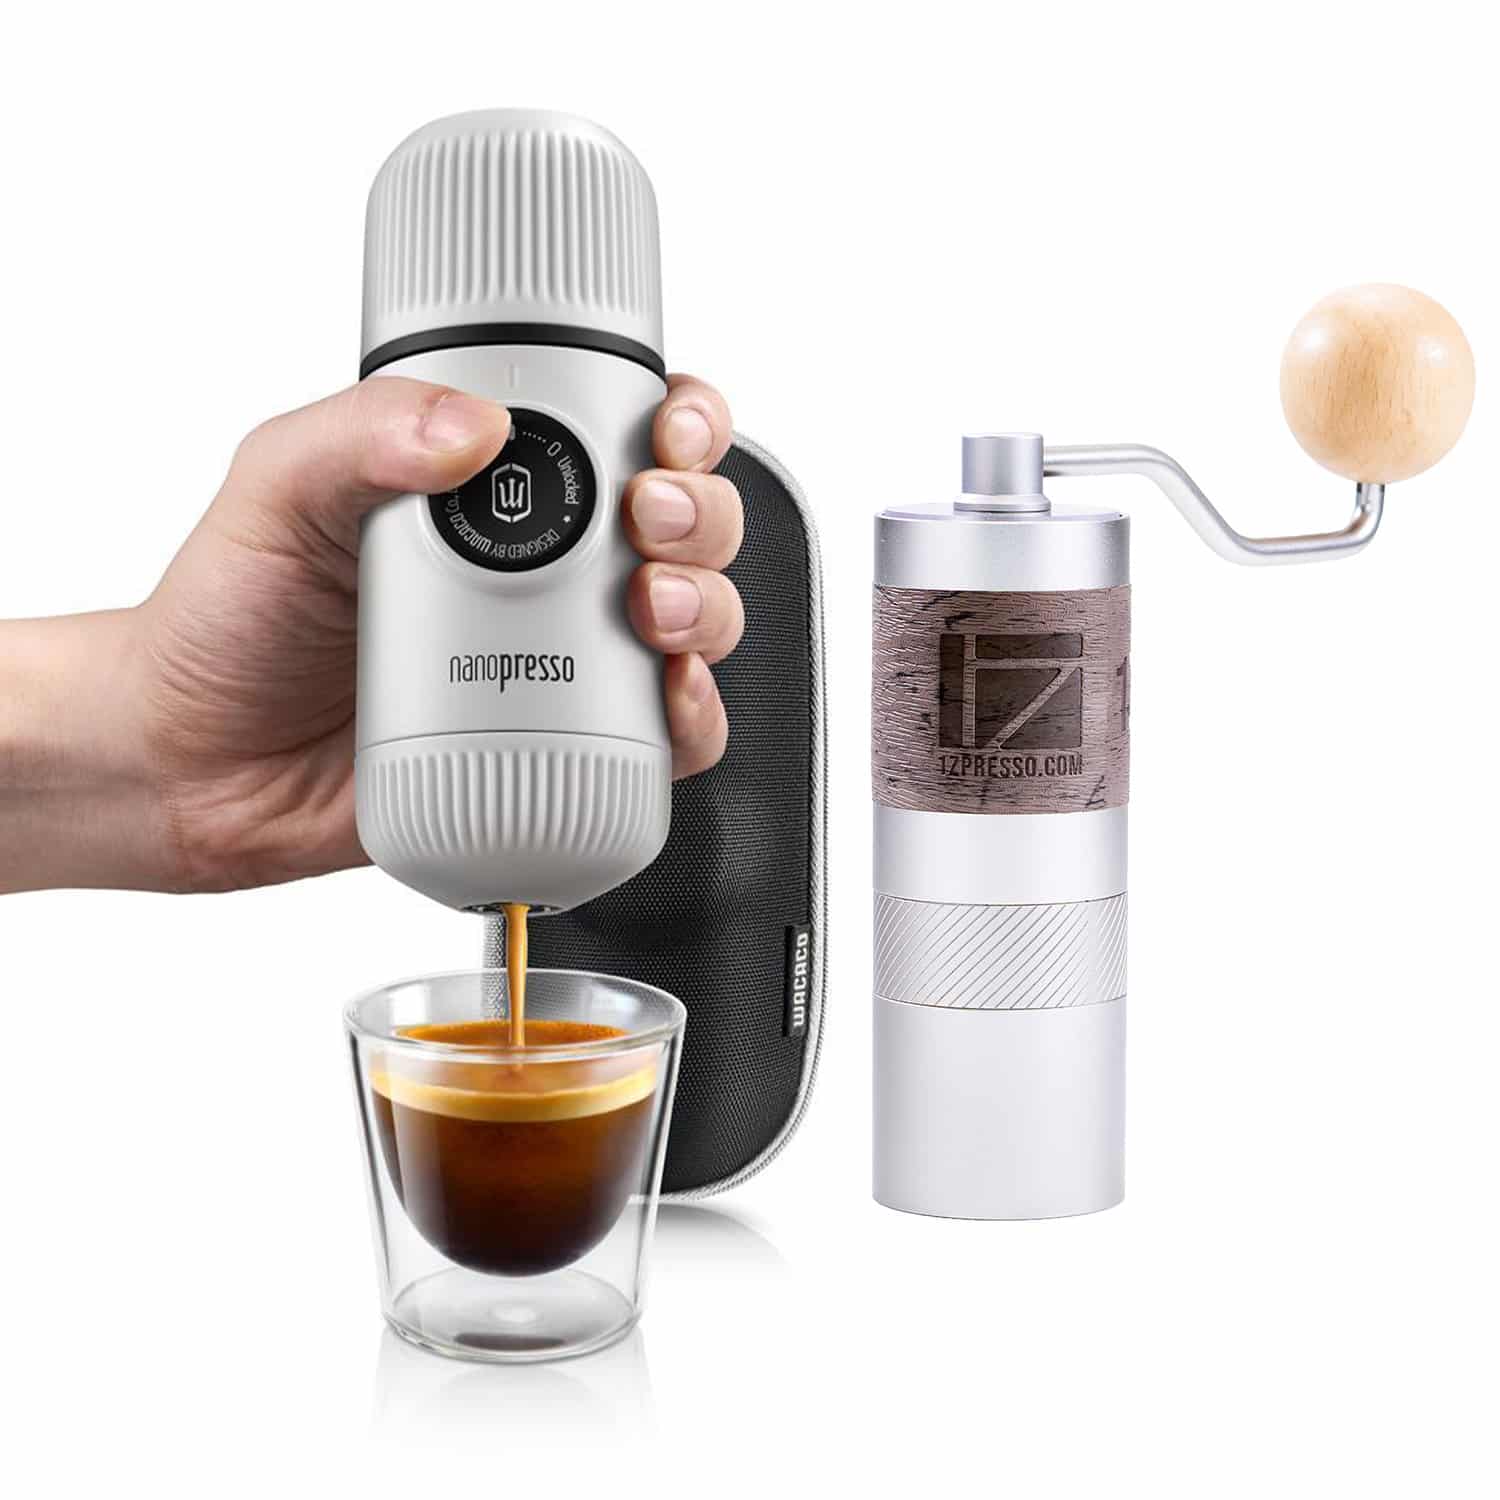 Bộ dụng cụ pha cà phê Wacaco Nanopresso và cối xay 1Zpresso Q2 (Black)